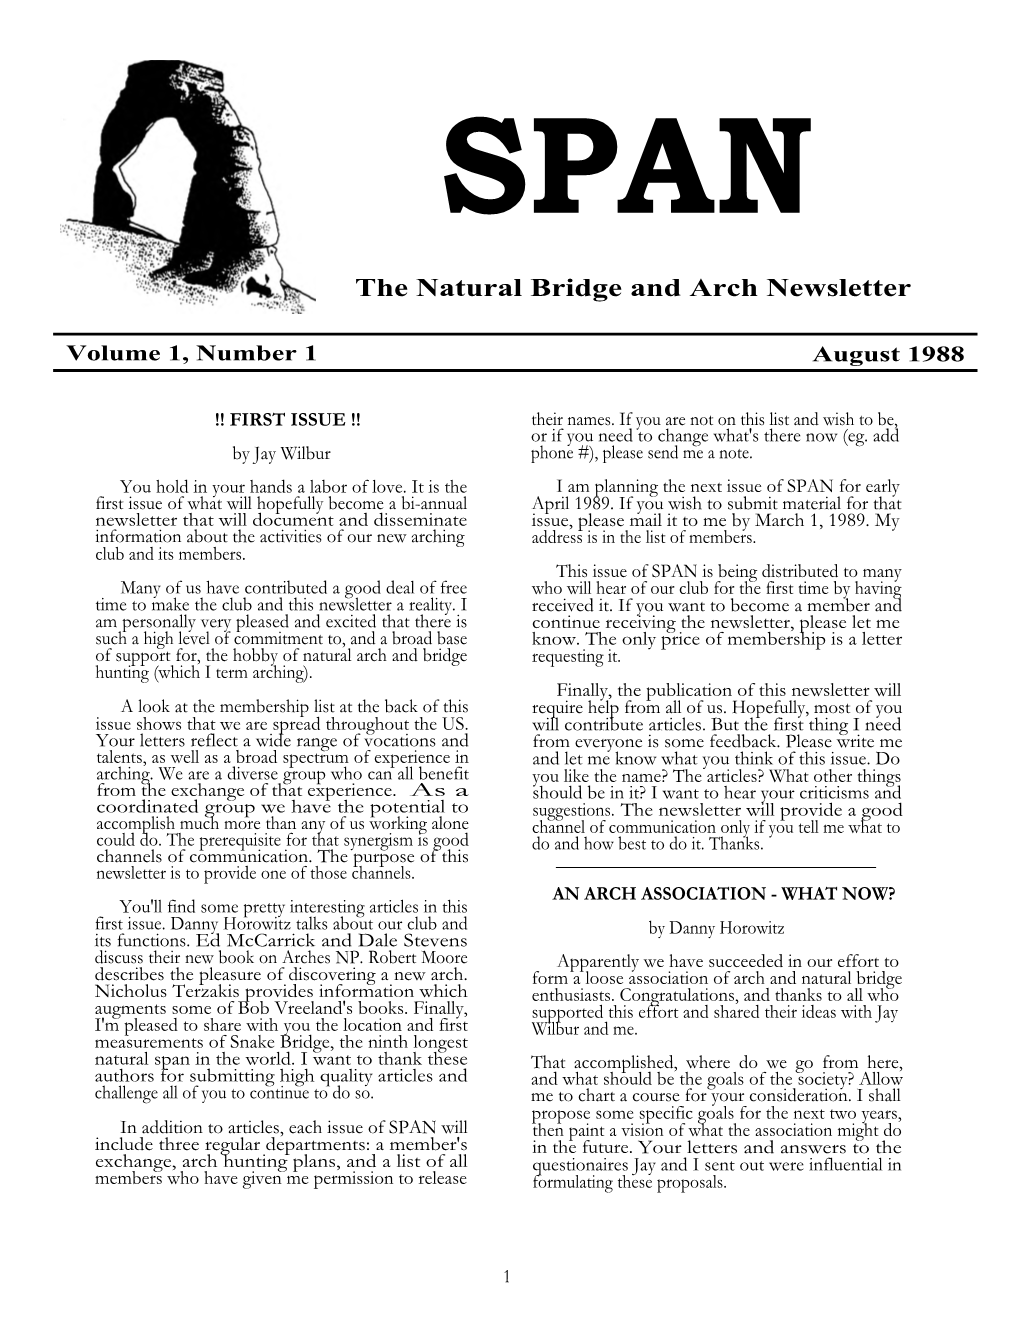 SPAN Volume 1 Number 1, August 1988